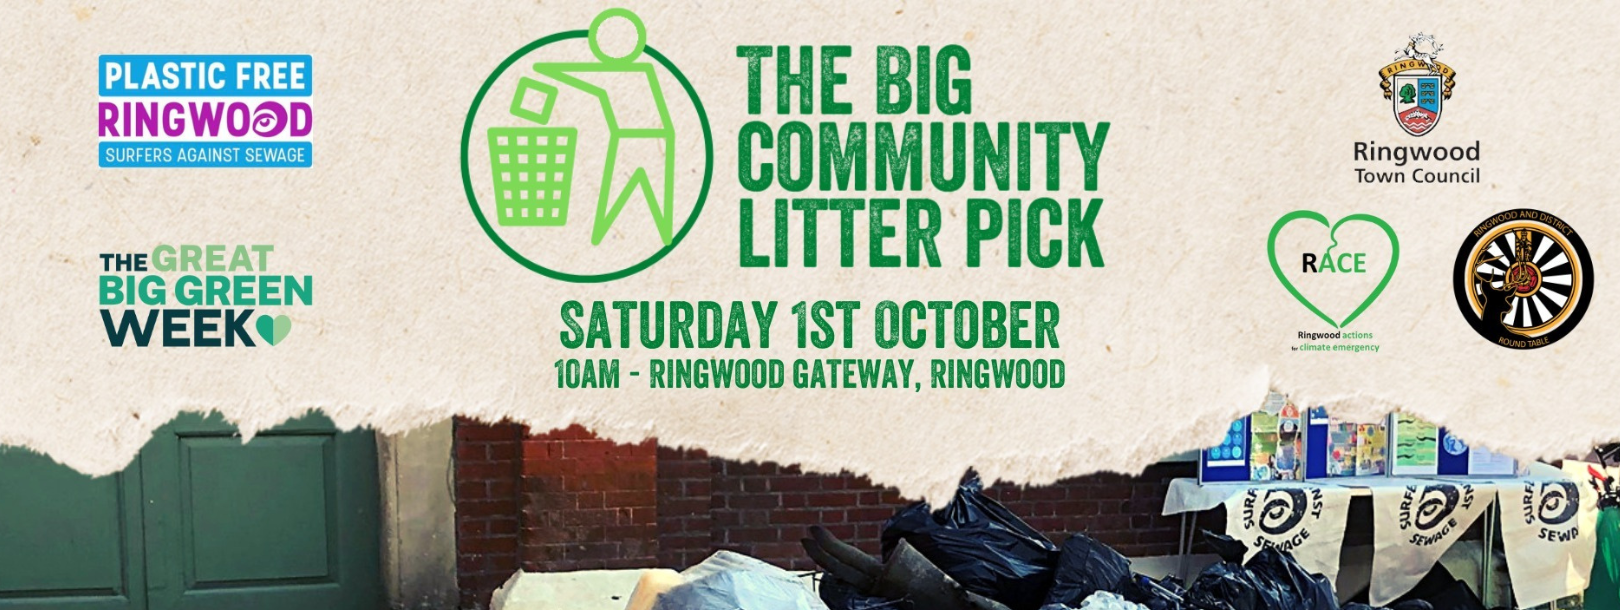 The Big Community Litter Picks - Ringwood 1st October, Poulner 2nd October